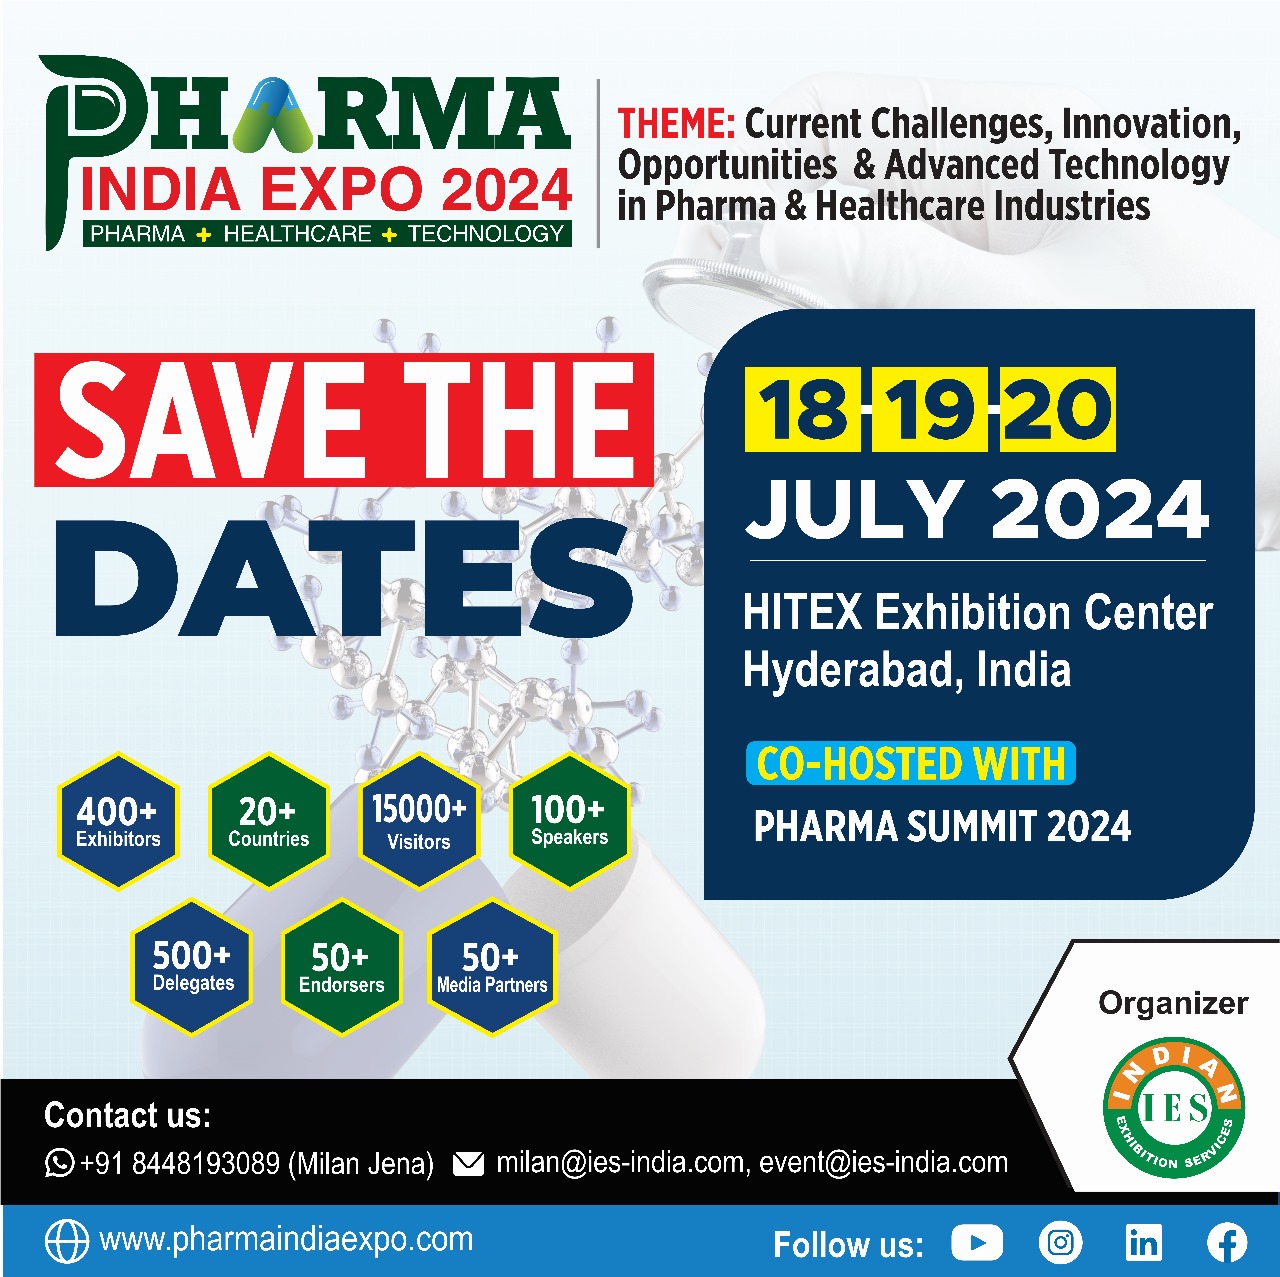 PHARMA INDIA EXPO 2024, Hyderabad, Telangana, India